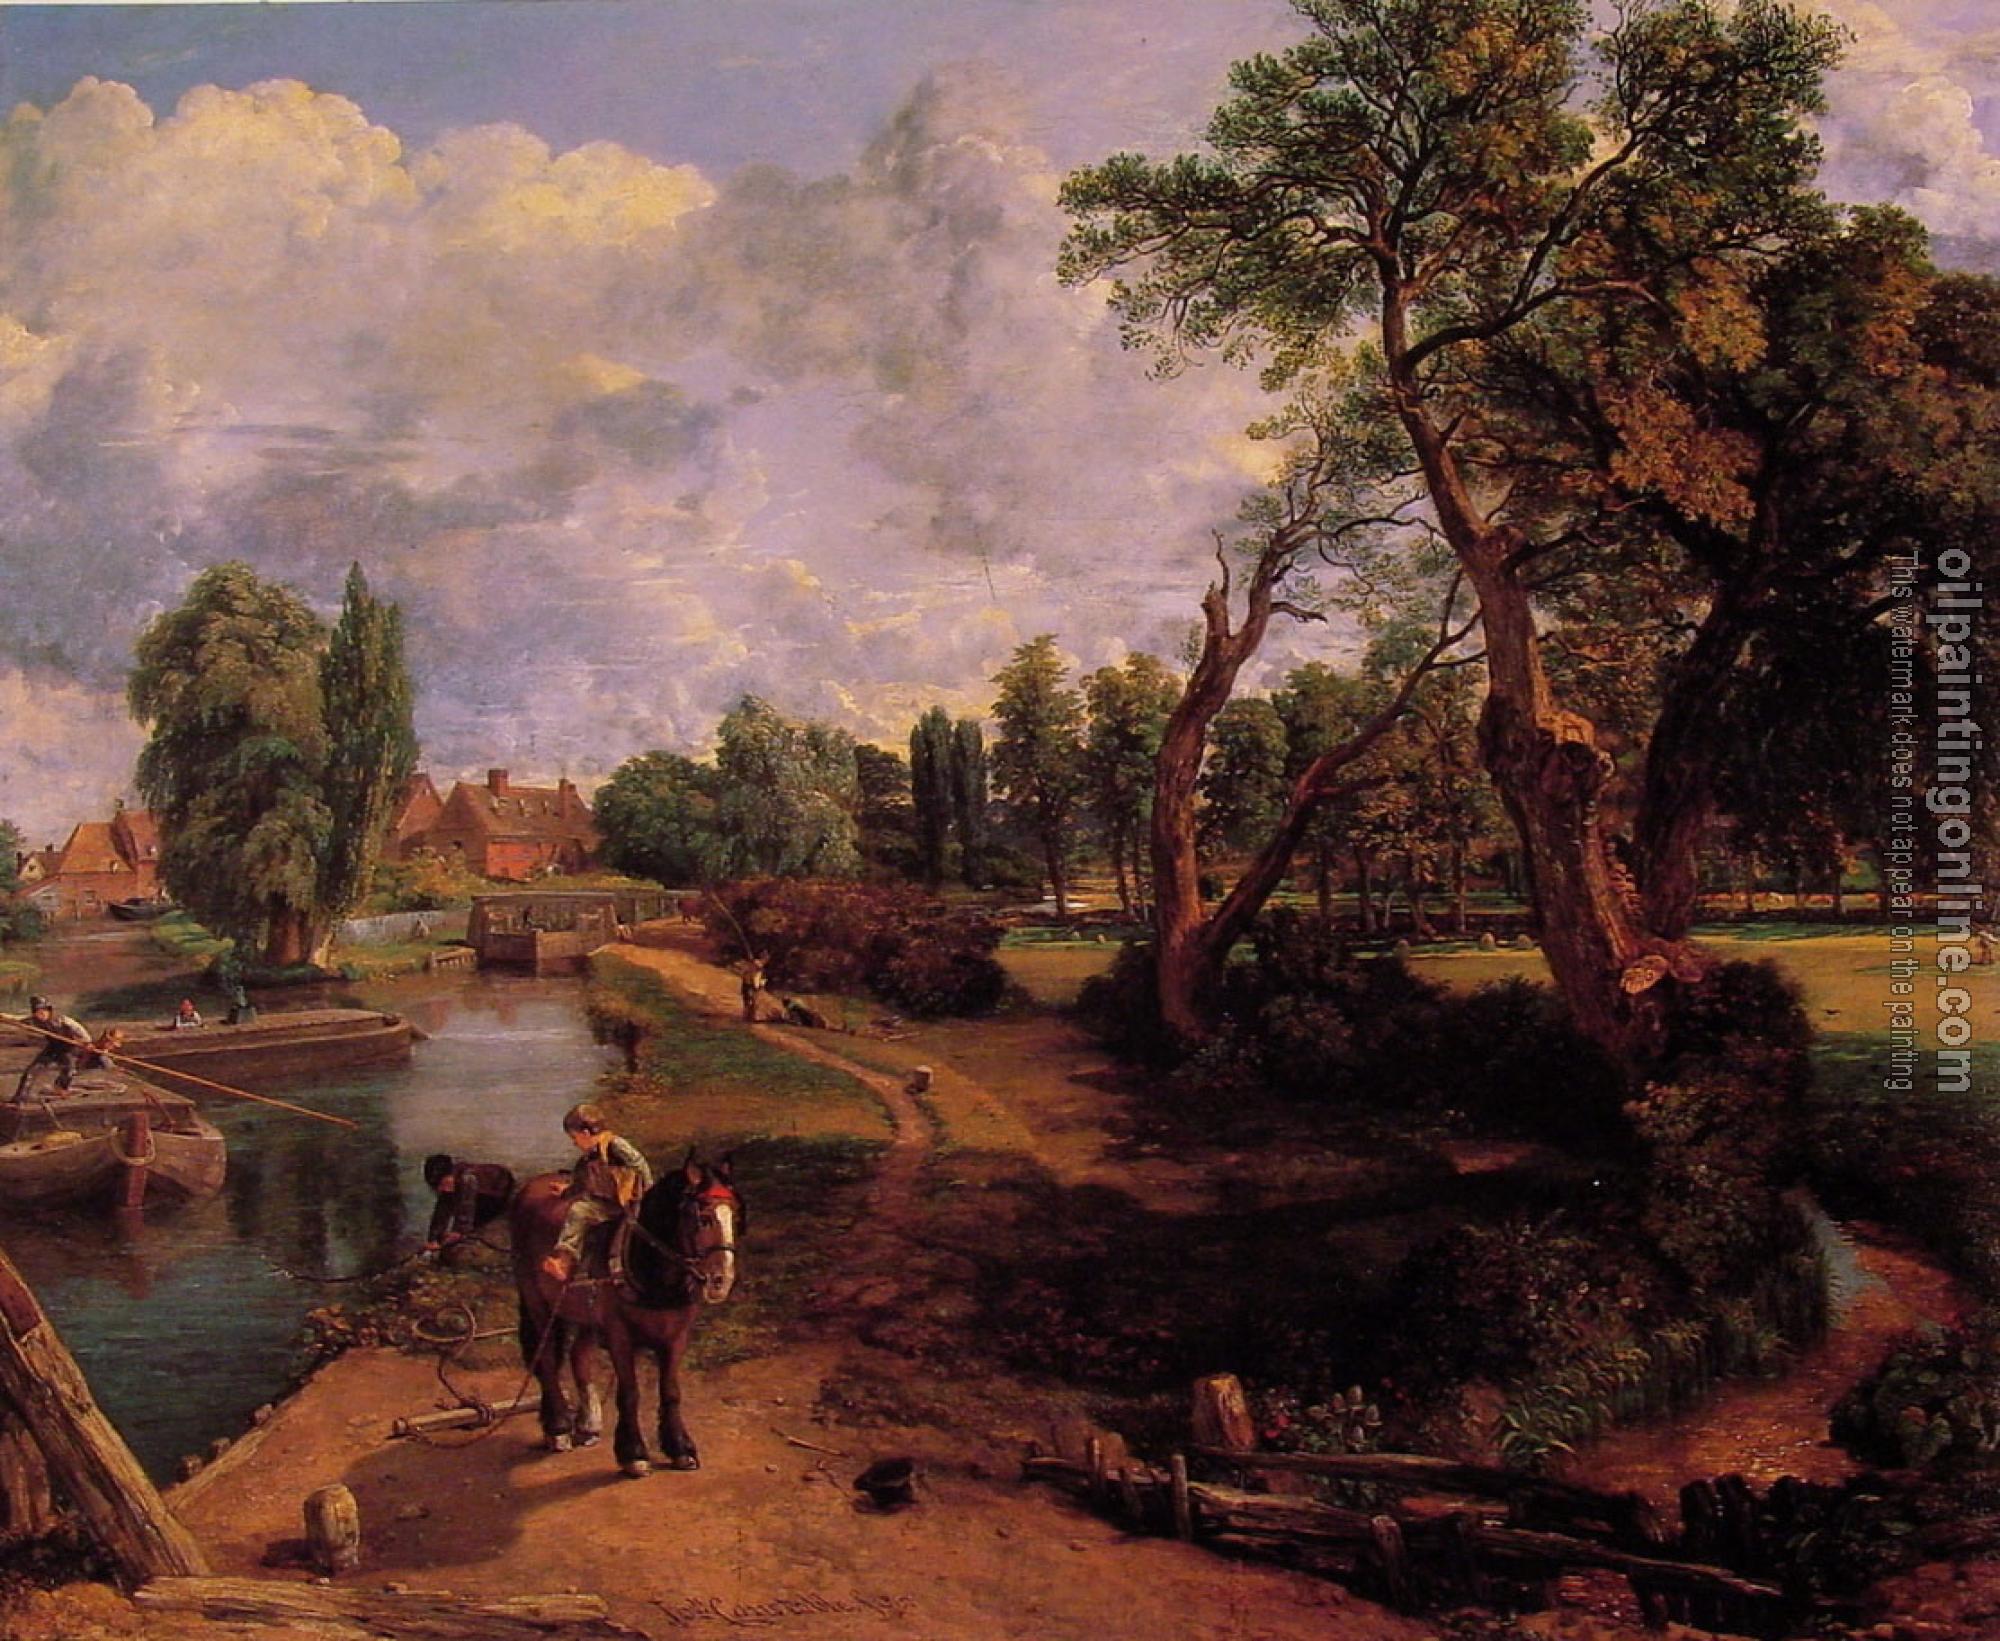 Constable, John - Flatford Mill